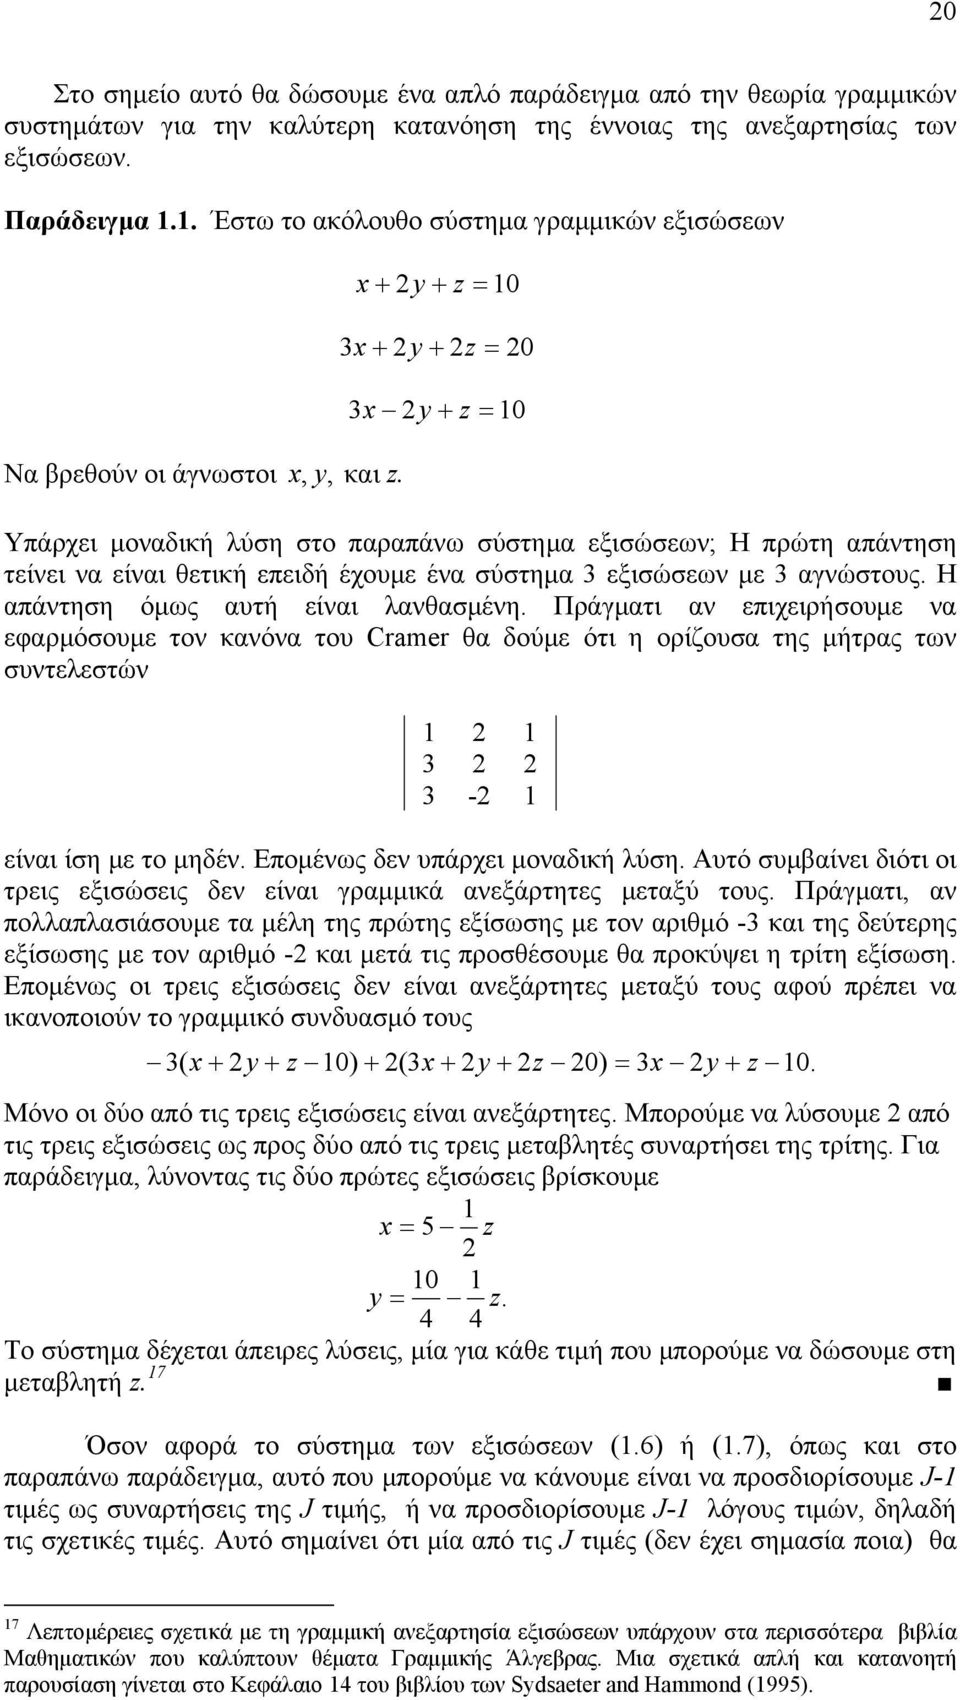 + y + z 0 3 + y + z 0 3 y + z 0 Υπάρχει μονδική λύση στο πρπάν σύστημ εξισώσεν; Η πρώτη πάντηση τείνει ν είνι θετική επειδή έχουμε έν σύστημ 3 εξισώσεν με 3 γνώστους. Η πάντηση όμς υτή είνι λνθσμένη.